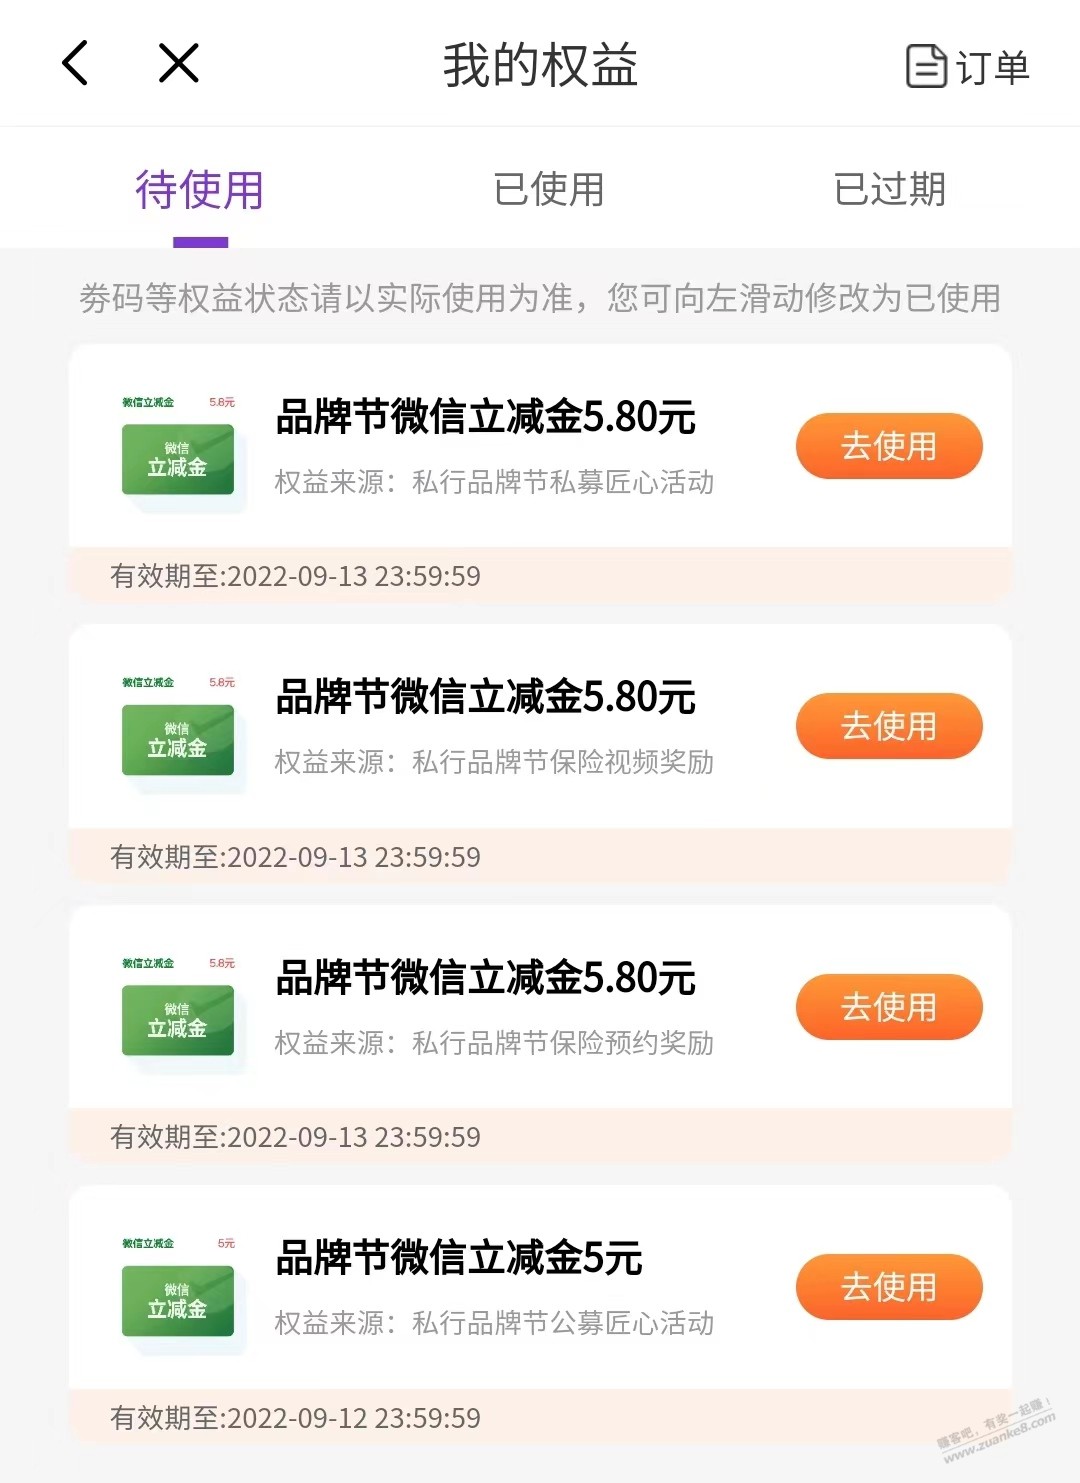 8月光大银行品牌节-惠小助(52huixz.com)